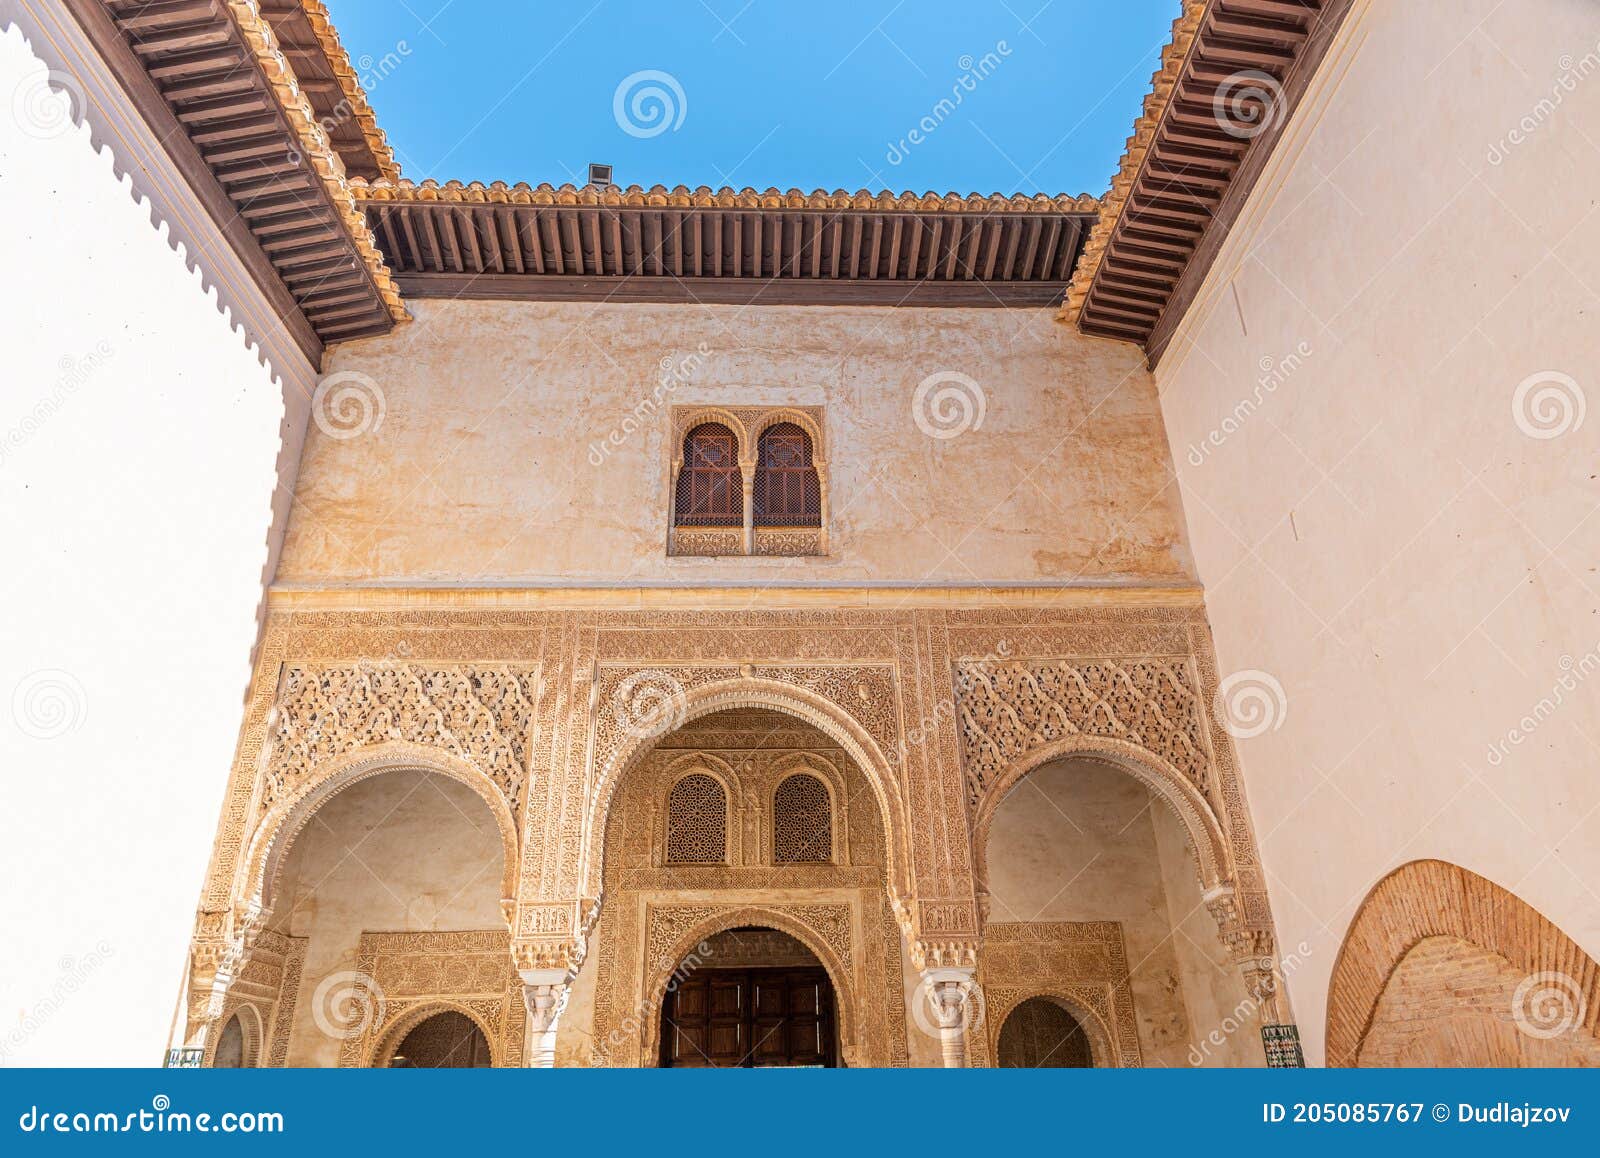 patio del cuarto dorado inside of alhambra palace in granada, spain